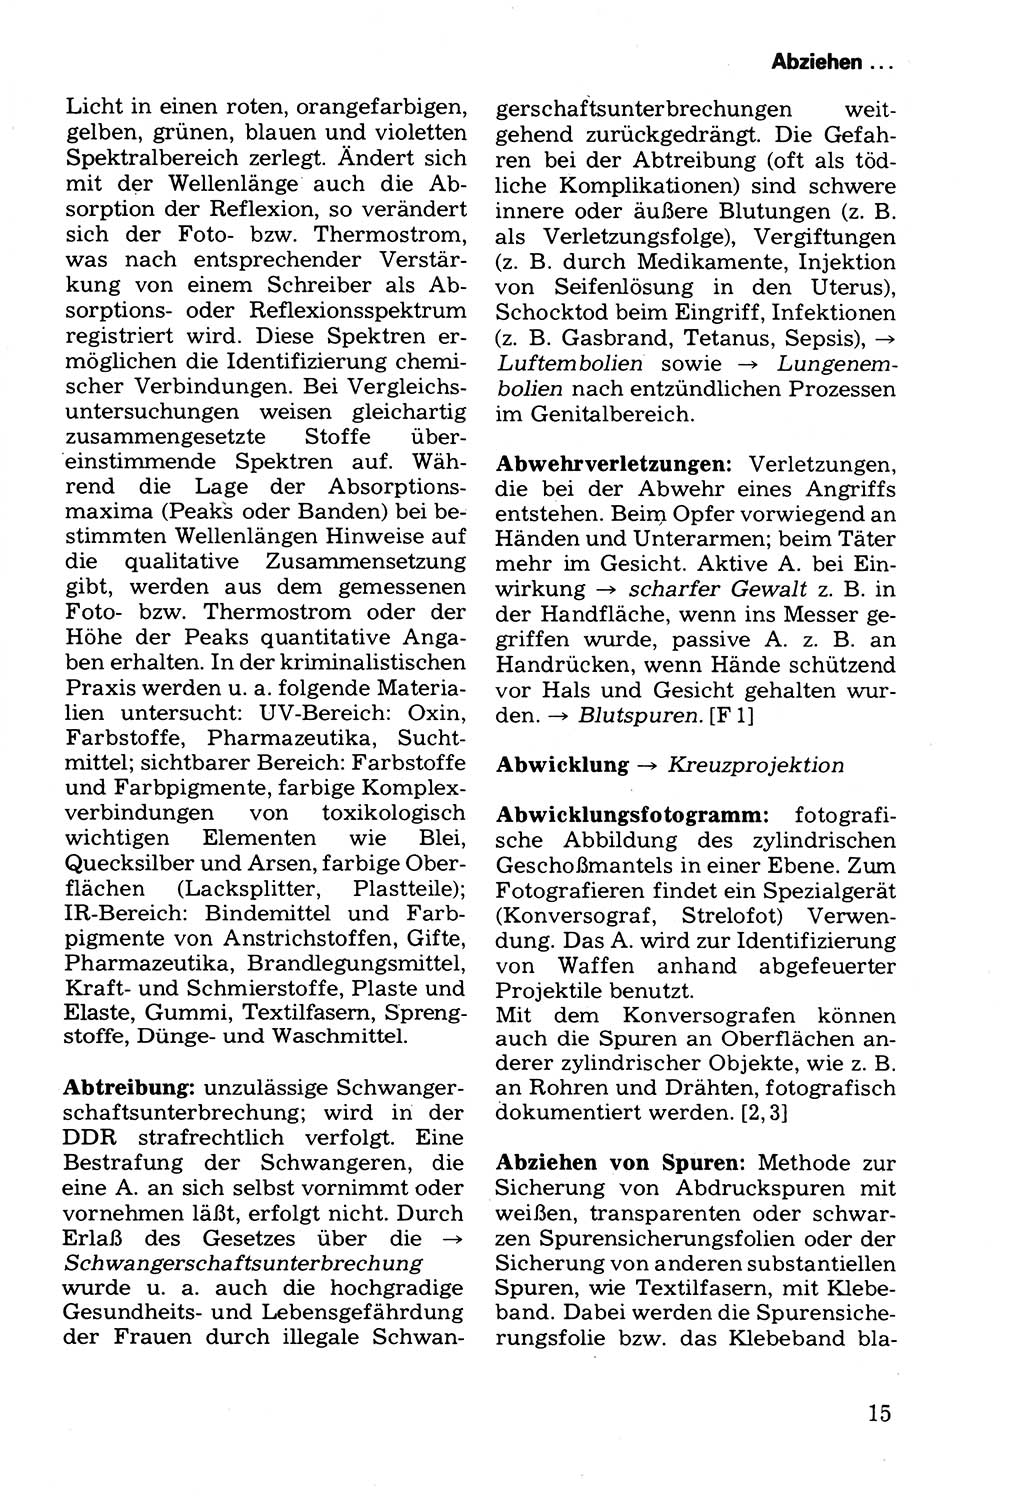 Wörterbuch der sozialistischen Kriminalistik [Deutsche Demokratische Republik (DDR)] 1981, Seite 15 (Wb. soz. Krim. DDR 1981, S. 15)